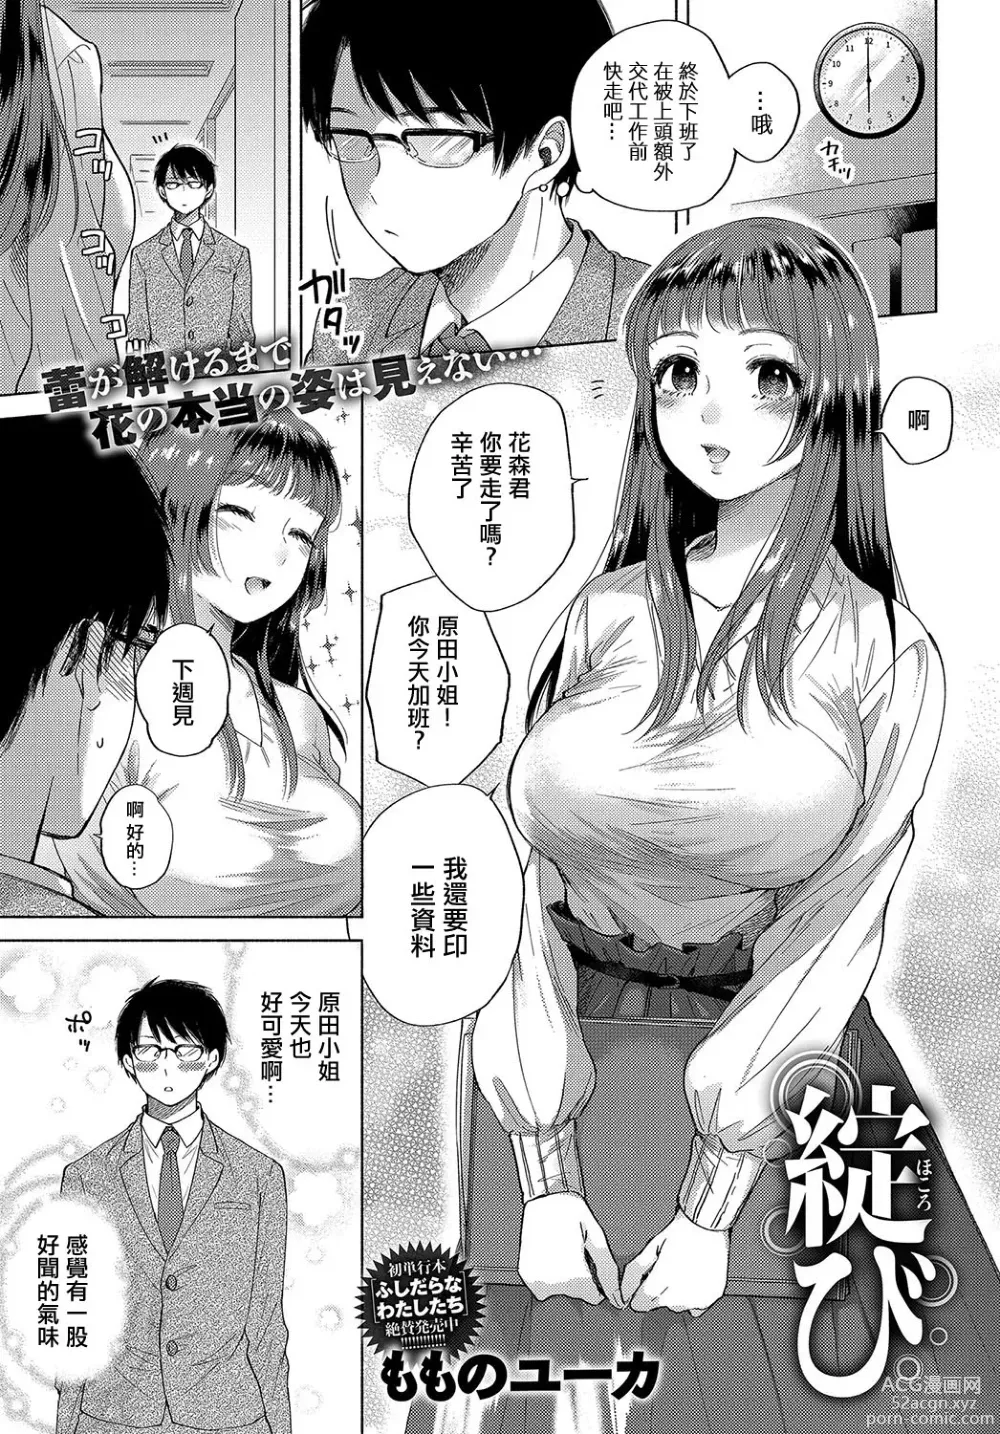 Page 1 of manga Hokorobi